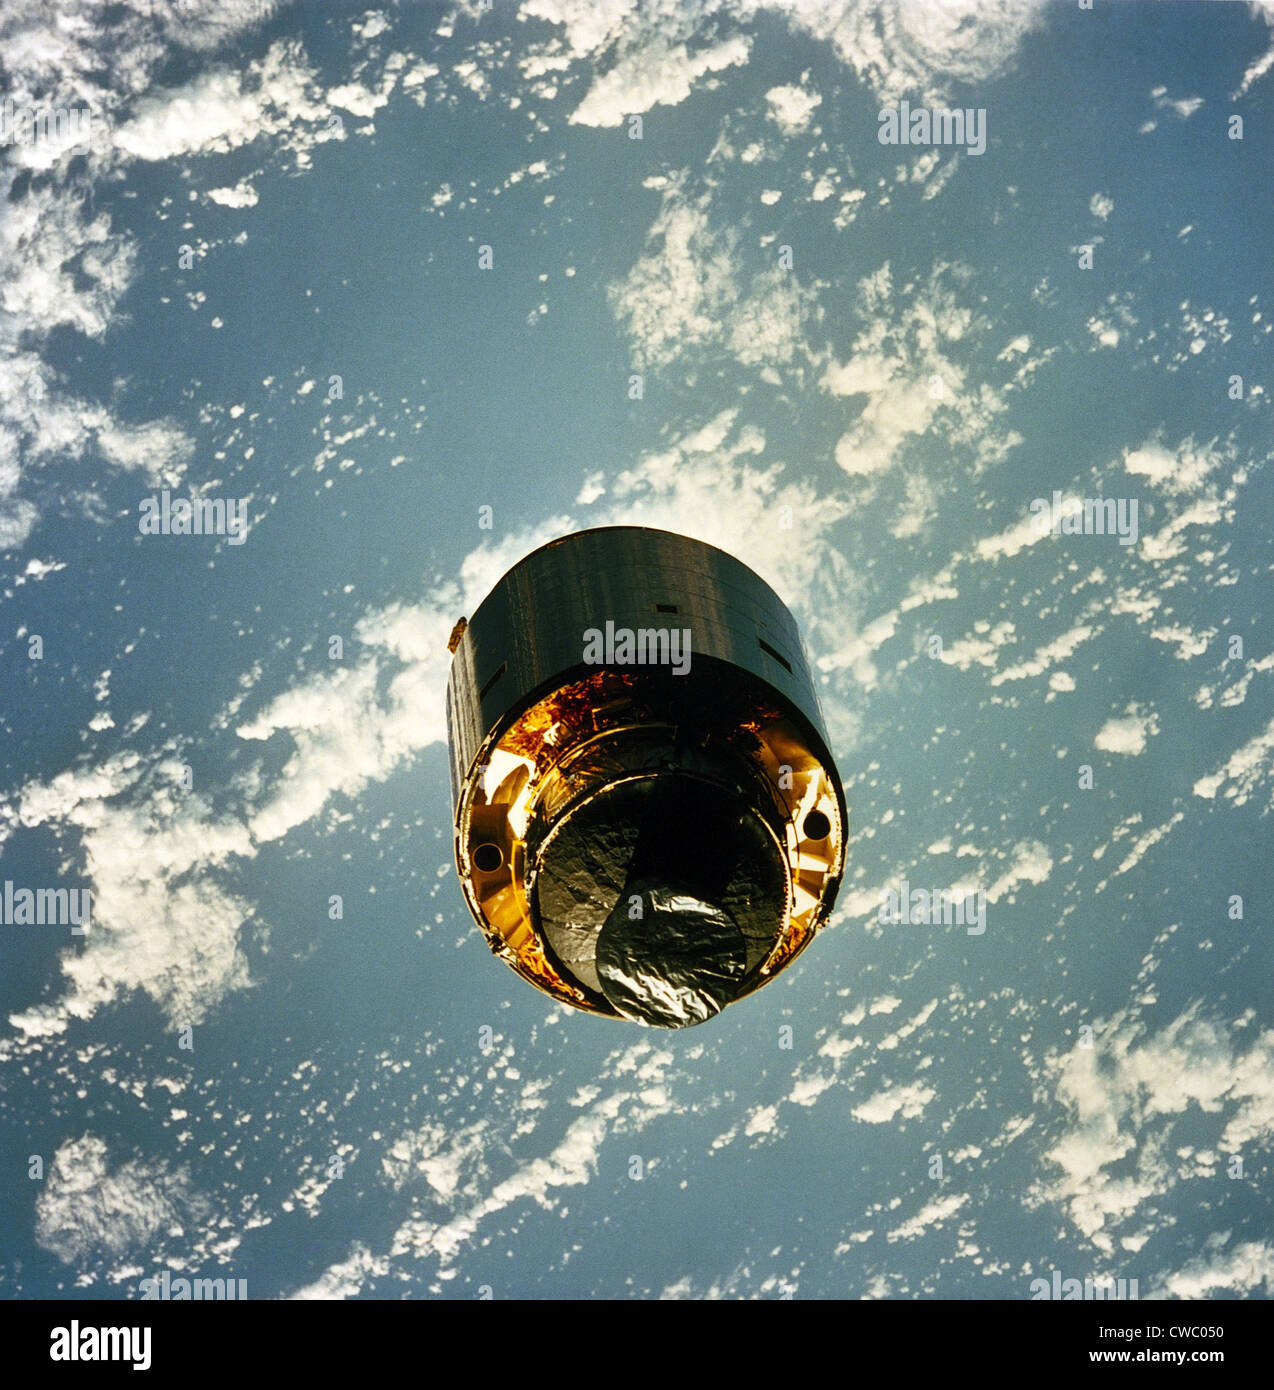 INTELSAT VI, ein Kommunikationssatellit war nach seiner Markteinführung März 1990 in einen instabilen Orbit gestrandet. Fotografiert im orbit Stockfoto